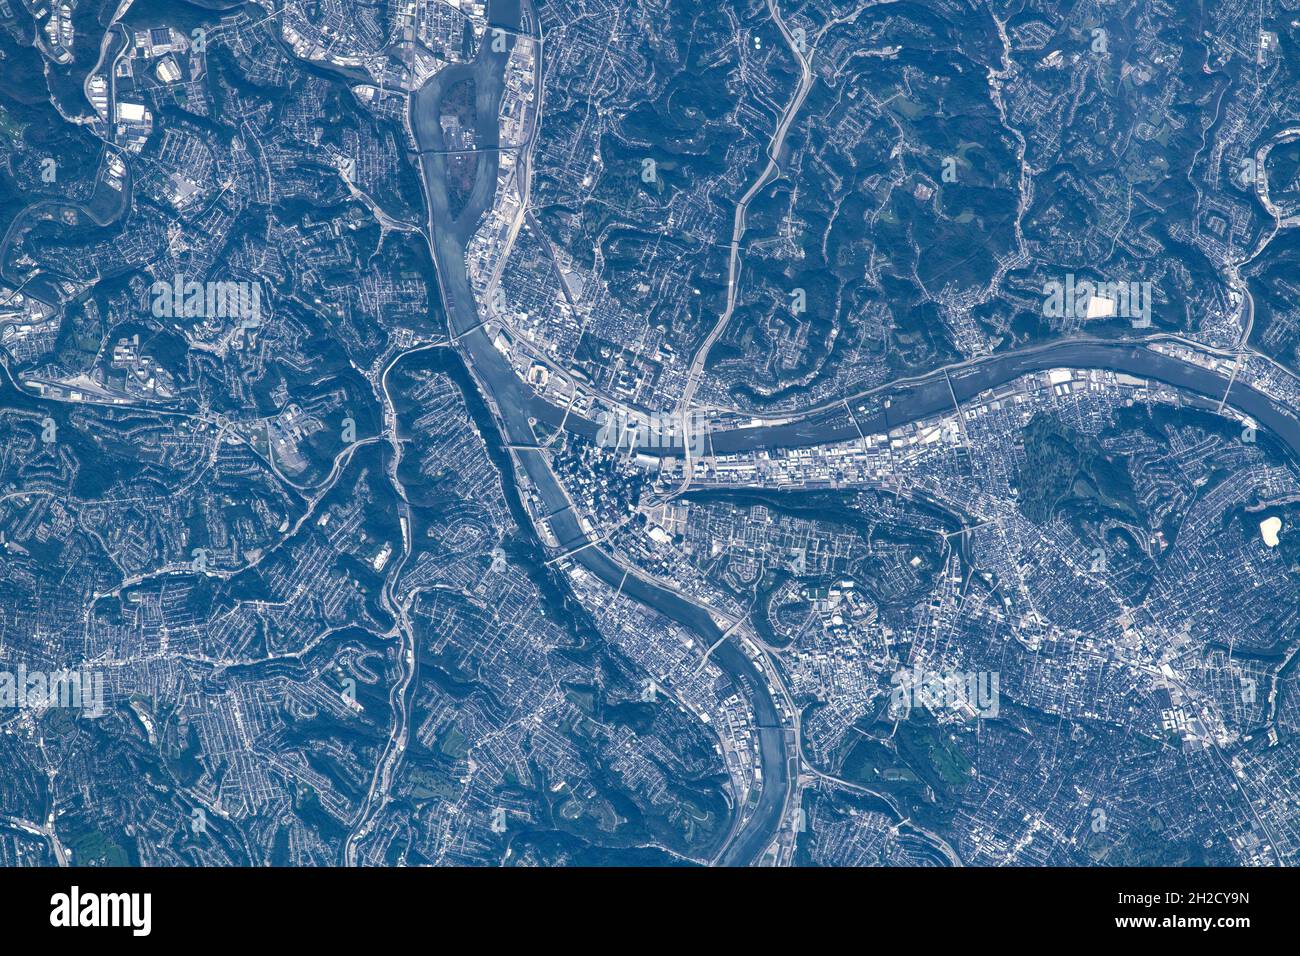 Dayton Ohio Space View. Elemente dieses Bildes, die von der NASA eingerichtet wurden Stockfoto